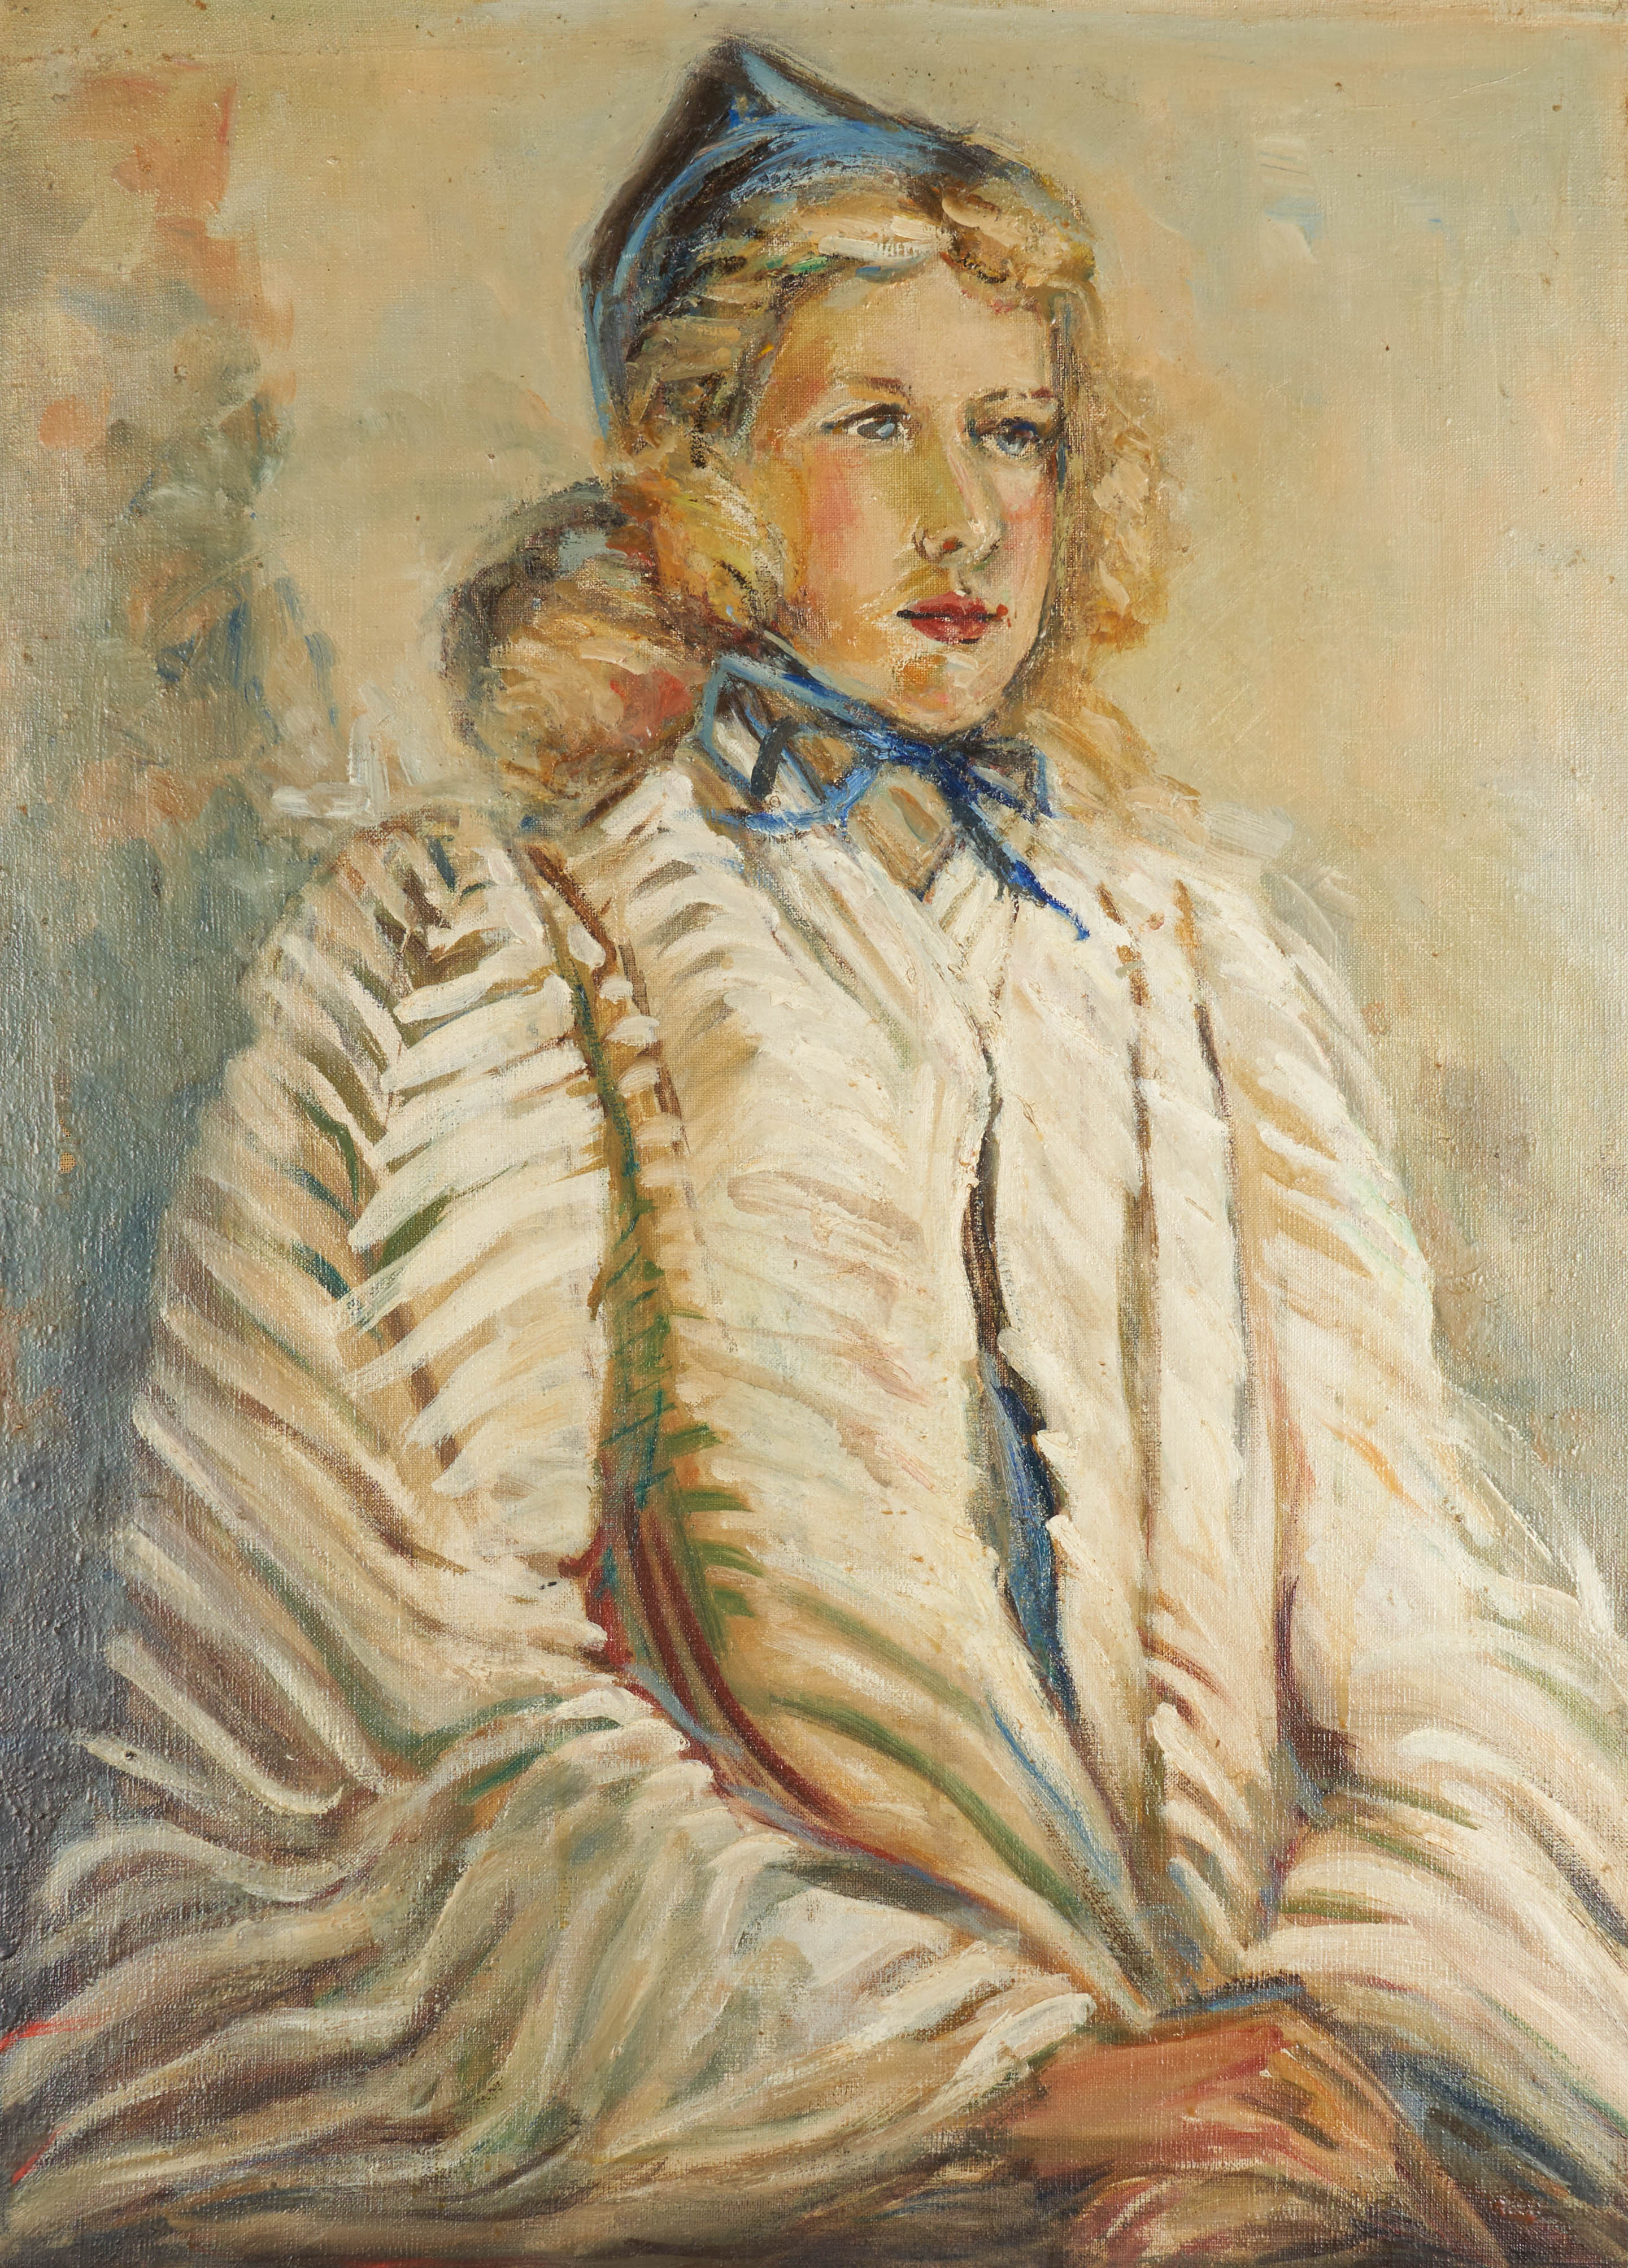 1930s Modernist portrait of a woman 2e20b8